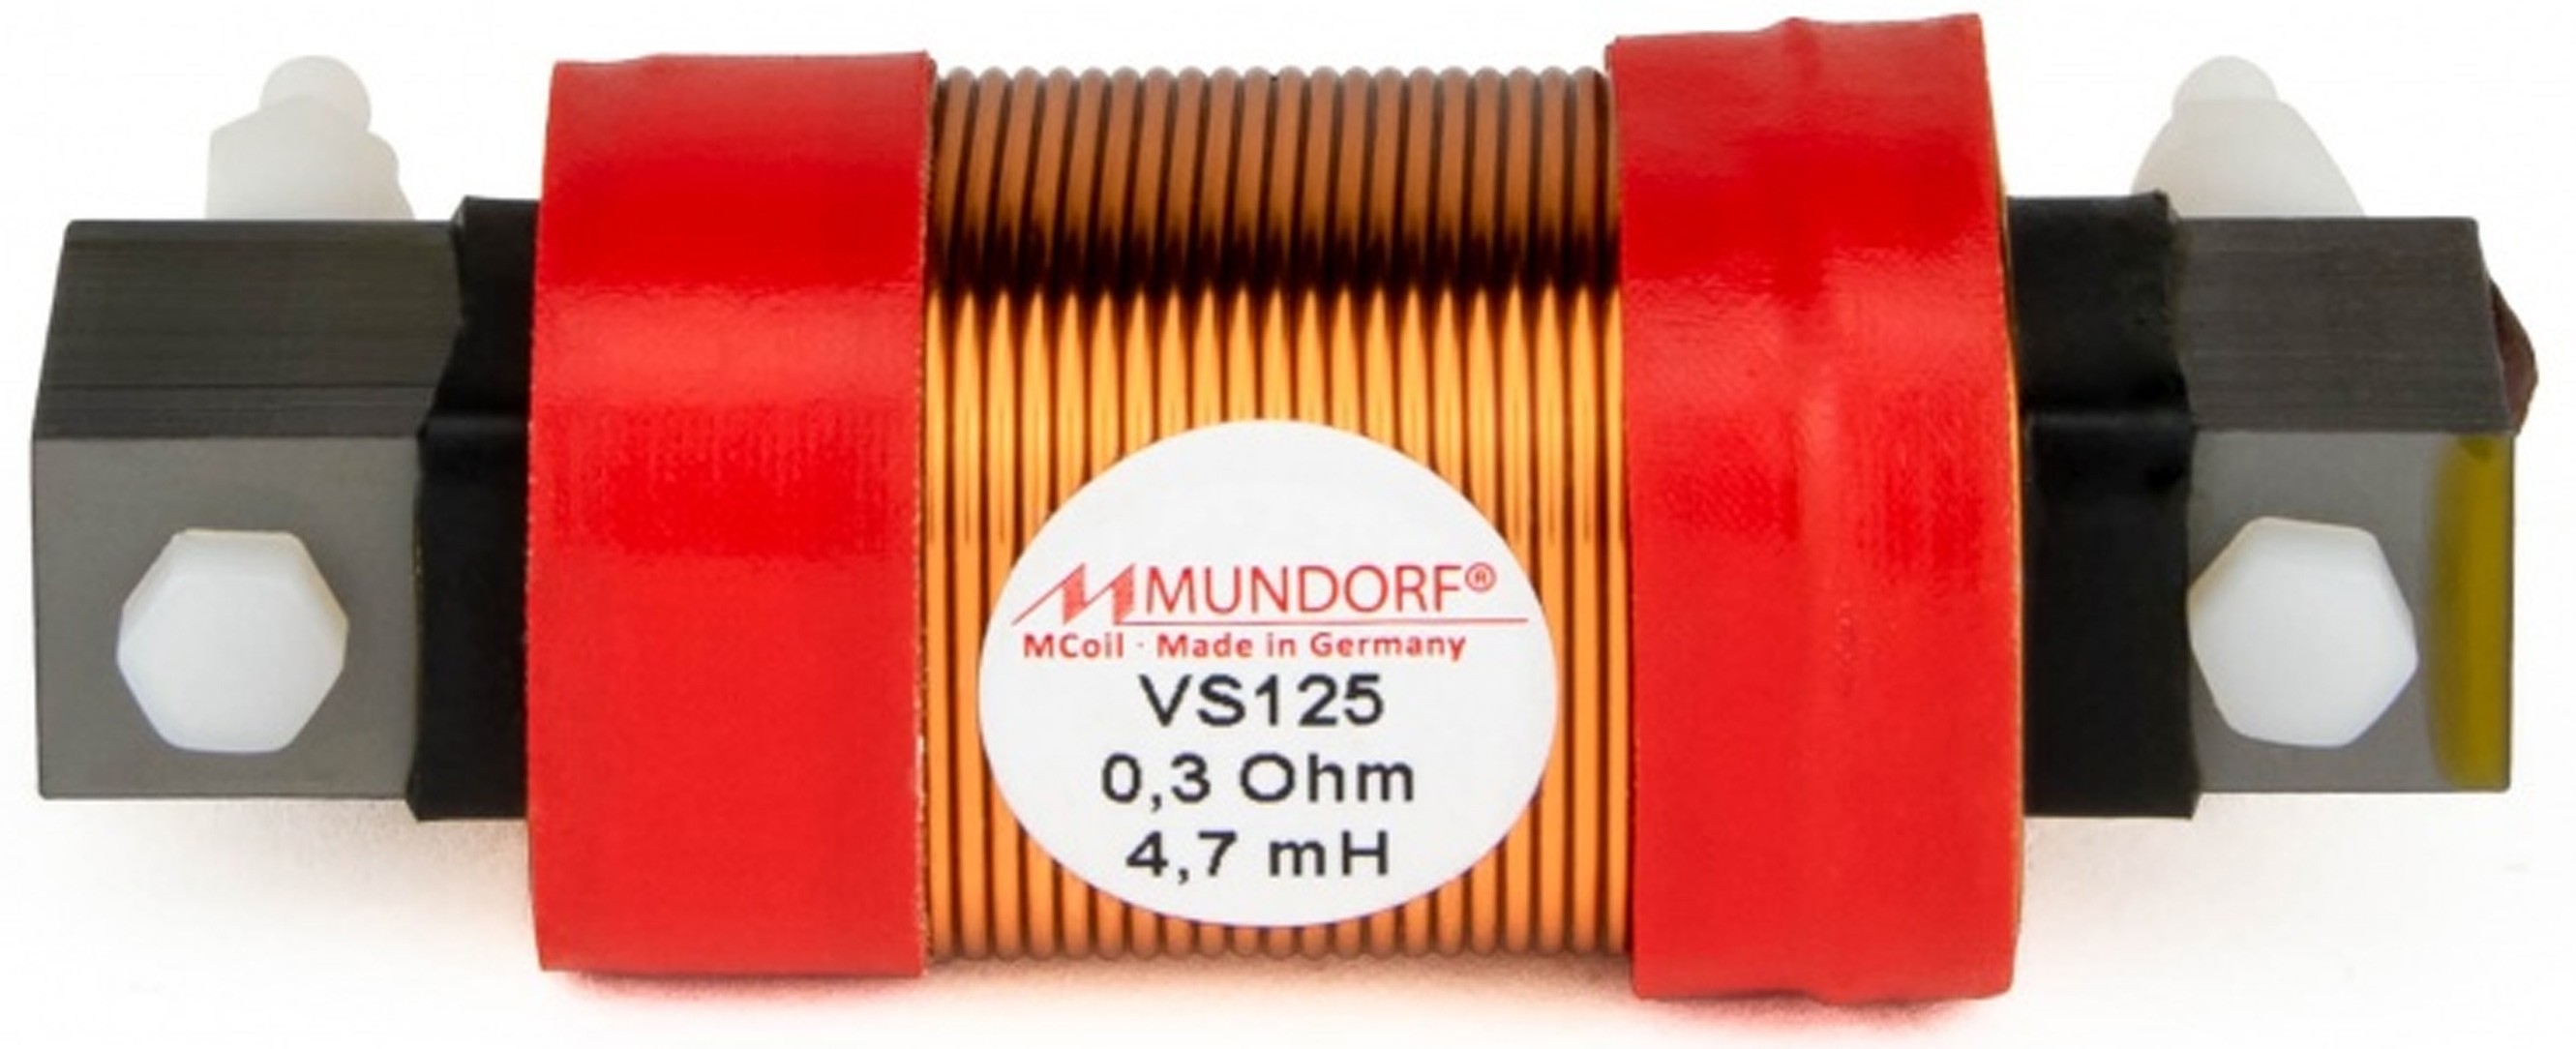 MUNDORF VS125-3.9 MCOIL ICORE Copper Coil Feron Core 3.9mH